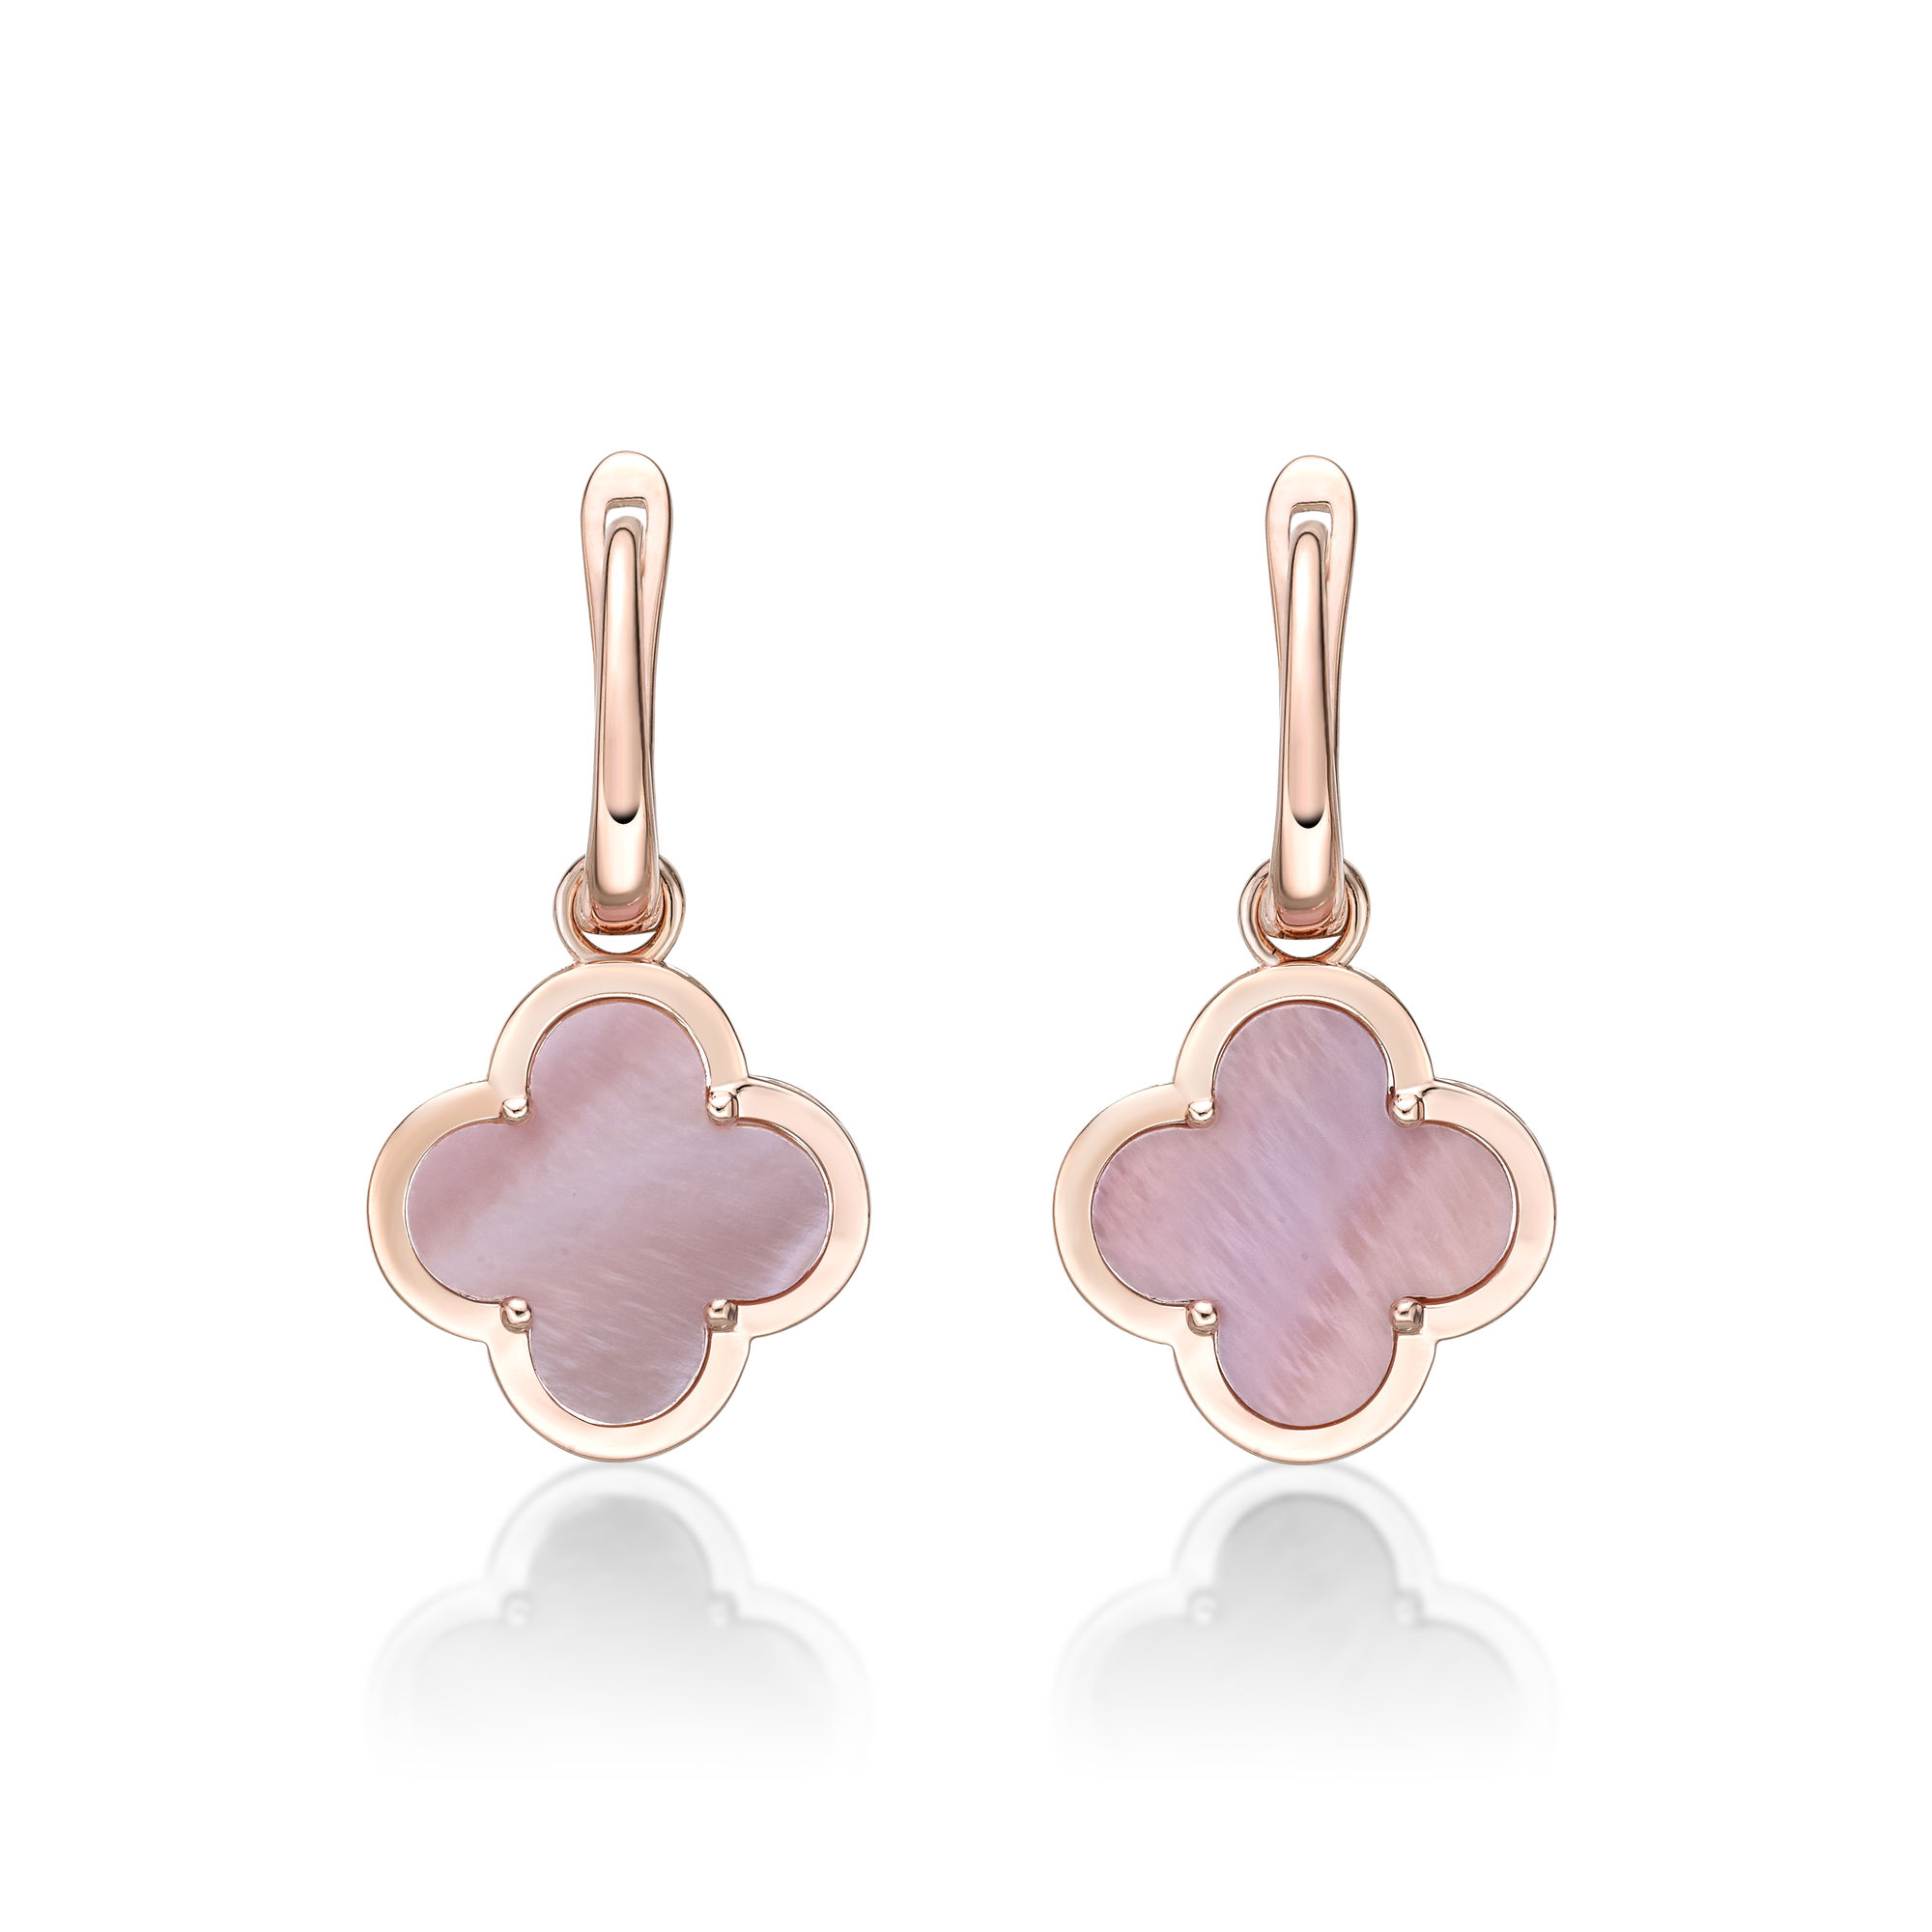 48792-earrings-fashion-jewelry-pink-sterling-silver-48792-3.jpg